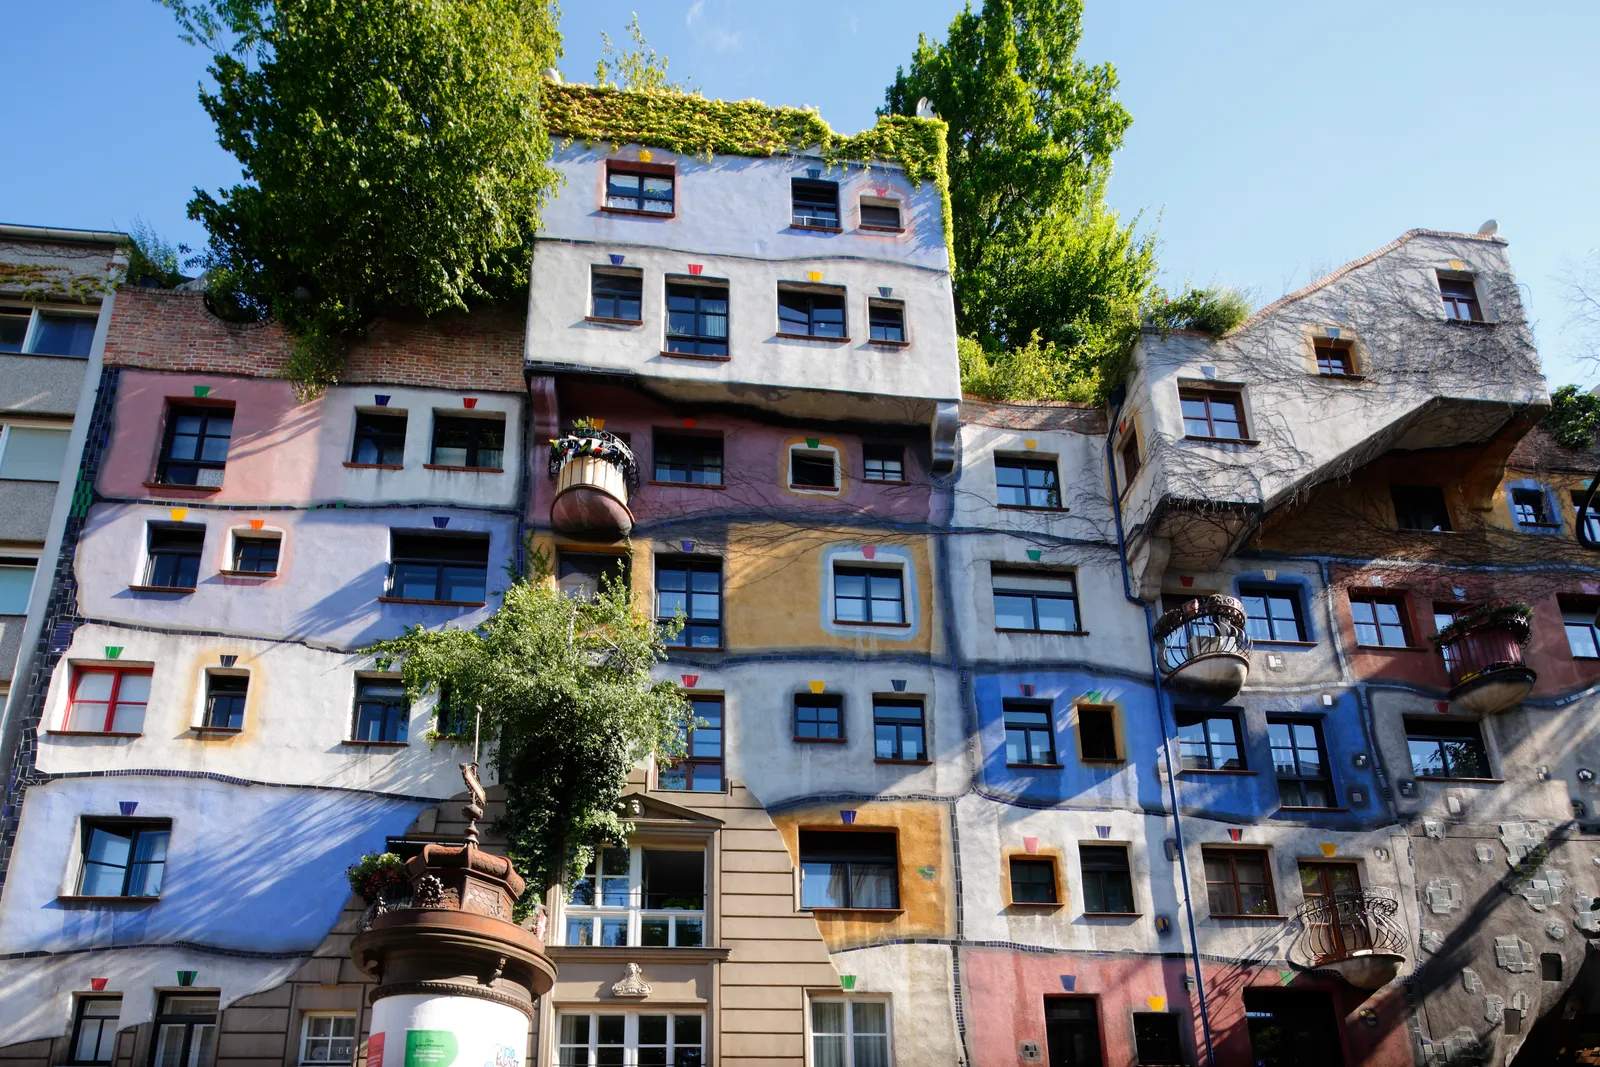 Hundertwasserhaus, Viên, Áo (thiết kế bởi Friedensreich Hundertwasser, 1985) Một trong những điểm thu hút phổ biến nhất của Vienna,  Hundertwasserhaus là dự án kiến ​​trúc đầu tiên của nghệ sĩ Friedensreich Hundertwasser. Với sự hỗ trợ của kiến ​​trúc sư Josef Krawina, Hundertwasser đã hình dung ra một ngôi nhà tương tác với thiên nhiên. Ngày nay, Hundertwasserhaus, một nơi ở có màu chủ đạo bao gồm các đường dốc và khảm sáng bóng, thuộc sở hữu của chính phủ Vienna, chịu trách nhiệm cho thuê các đơn vị. Mặc dù khách du lịch không thể vào bên trong, nhưng đừng sợ, vì Bảo tàng Hundertwasser chỉ cách đó một quãng đi bộ ngắn.